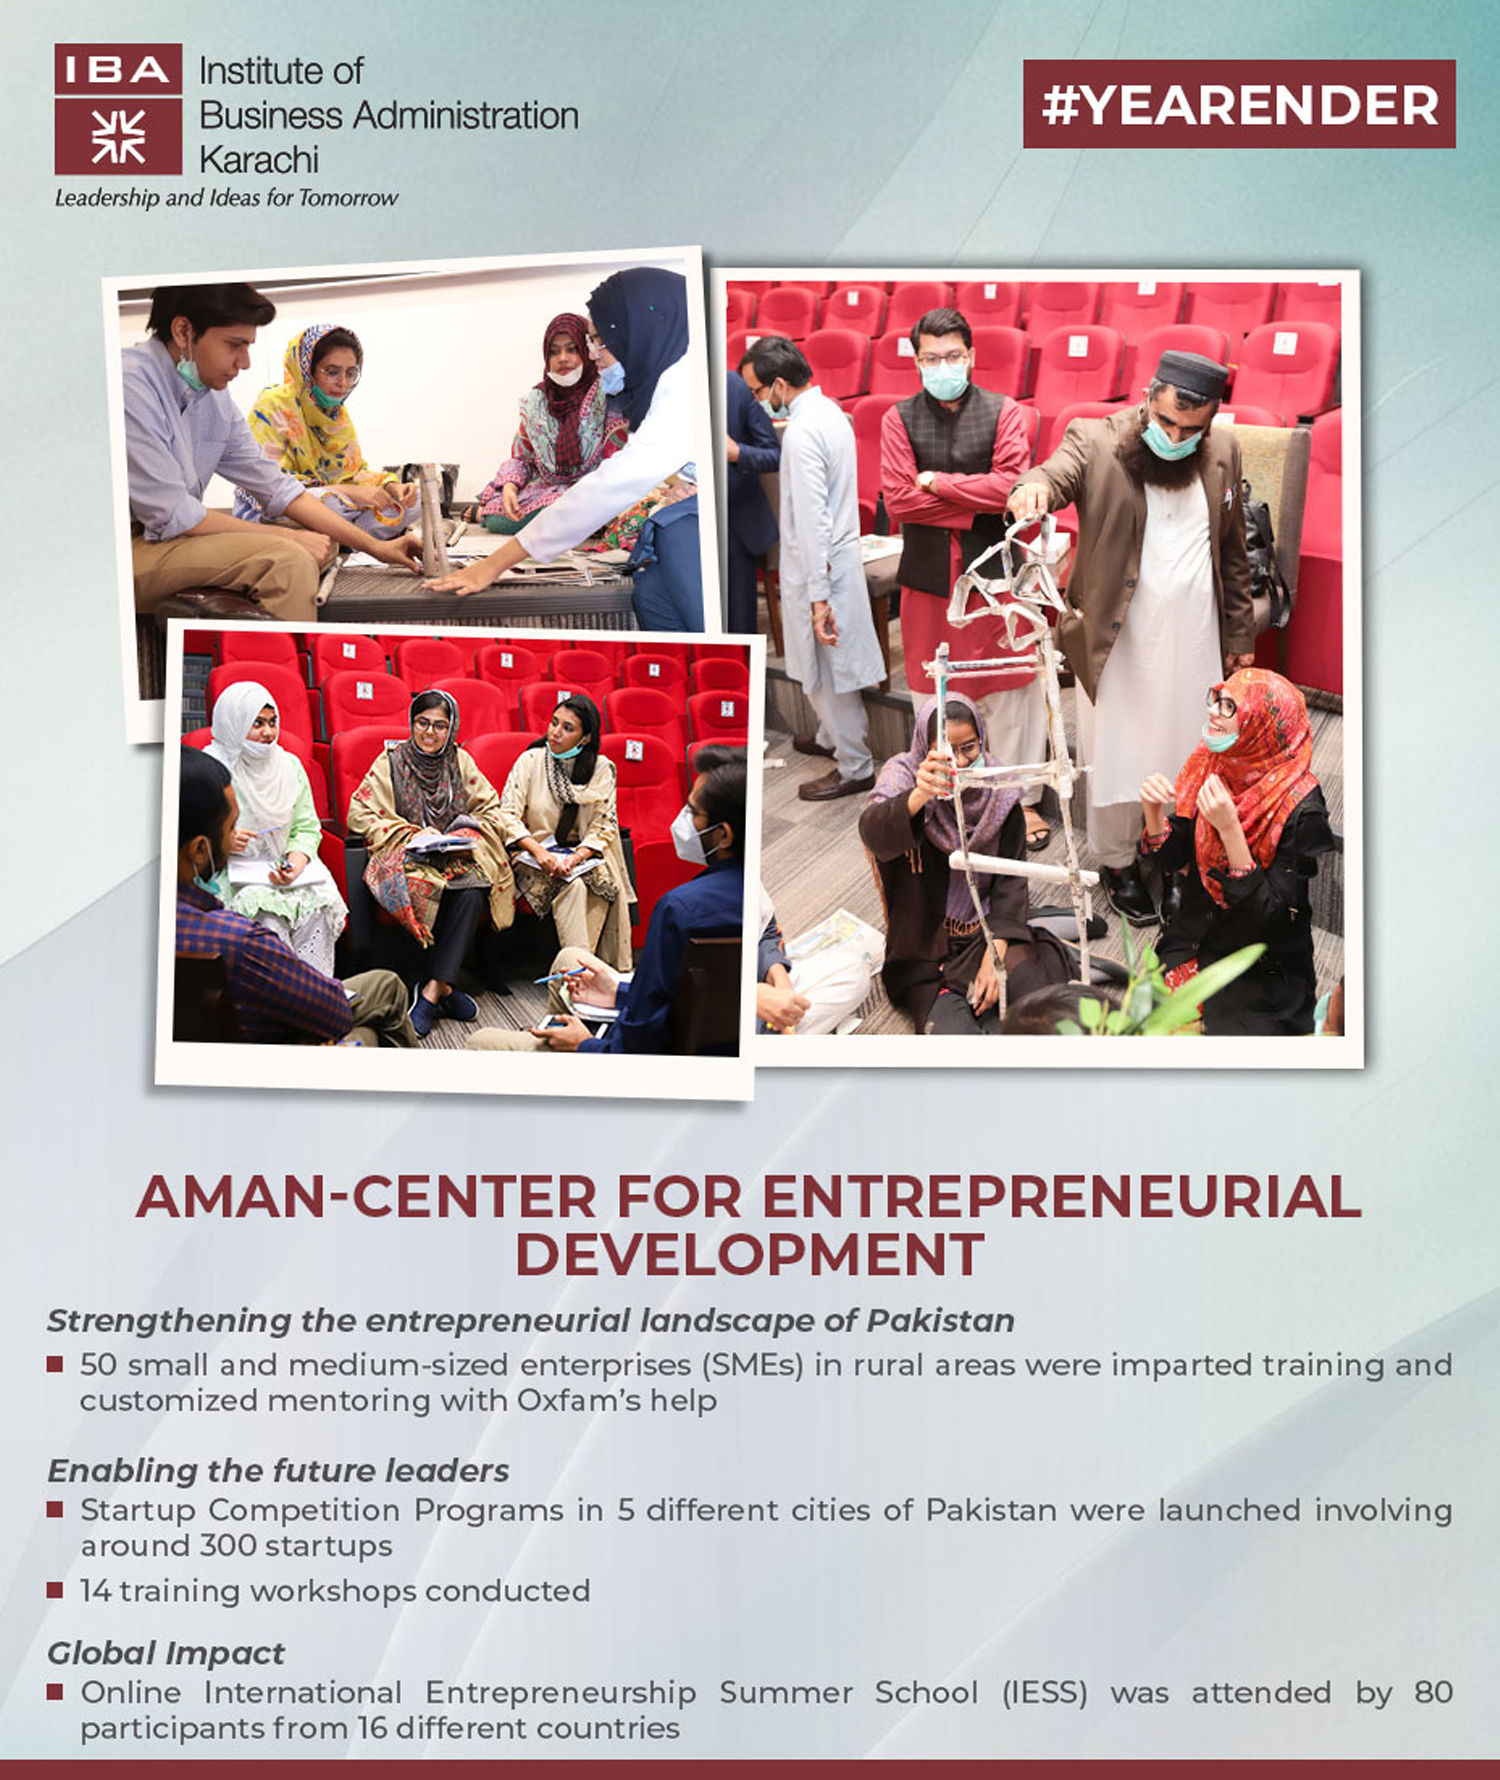 Aman-Center for Entrepreneurial Development